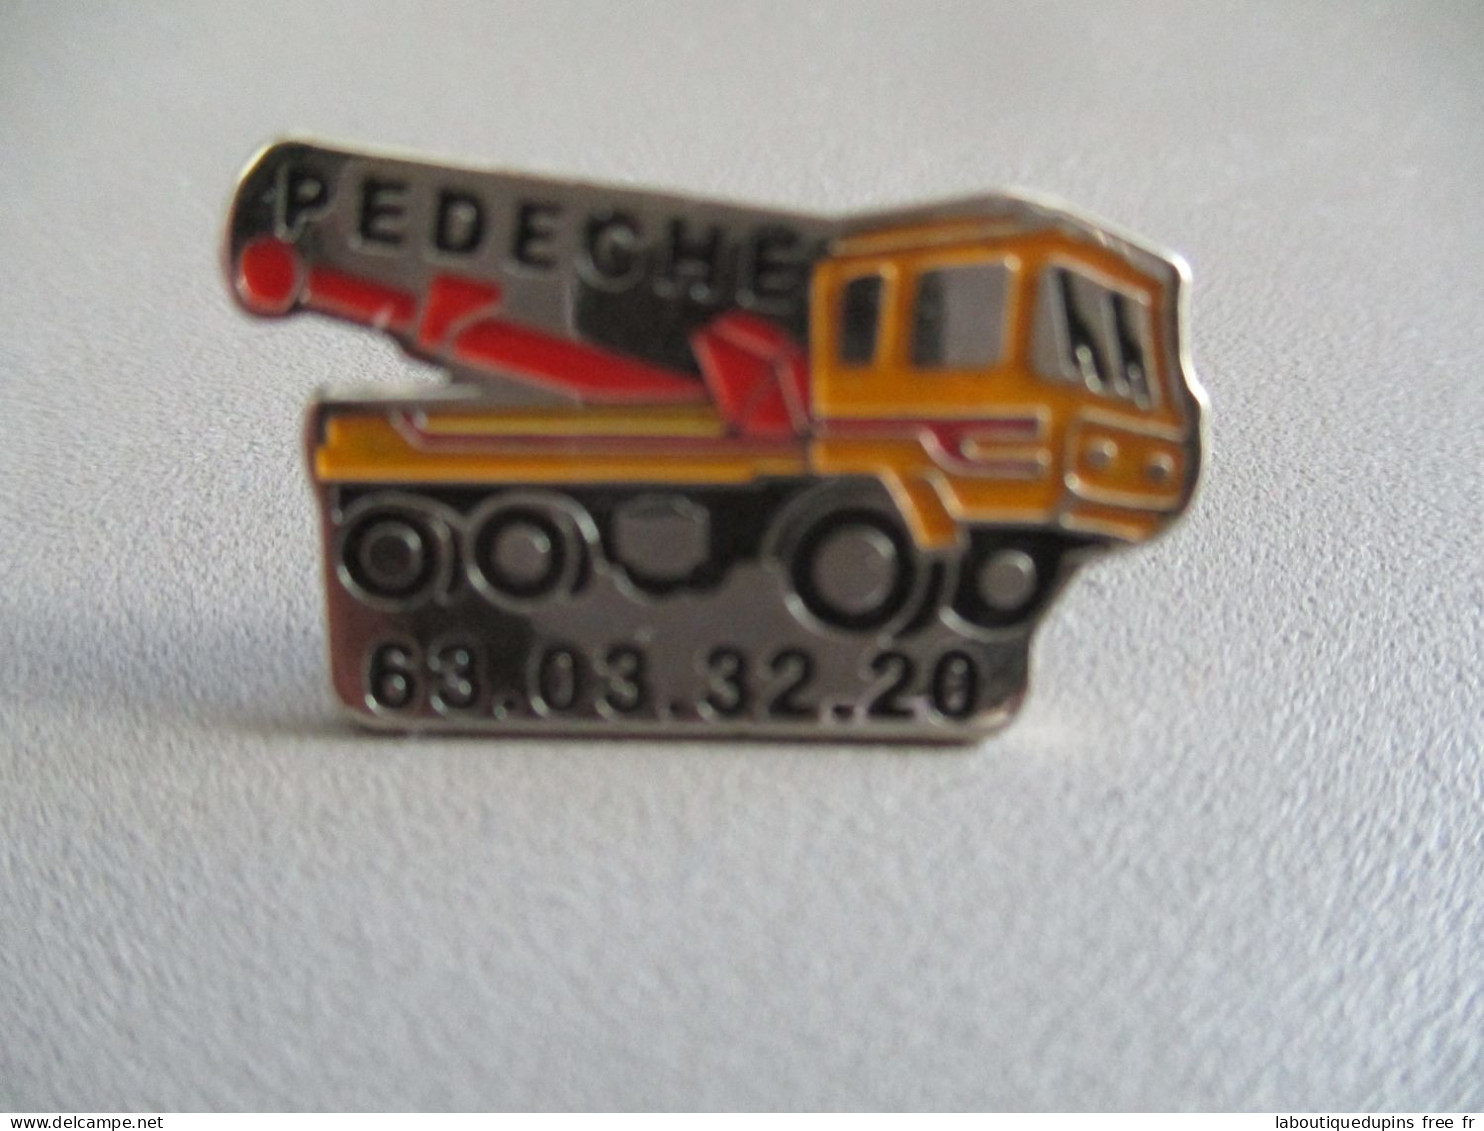 Pin's Lot 005 -- Pedeche 63 03 32 20  -- Exclusif Sur Delcampe - Transport Und Verkehr